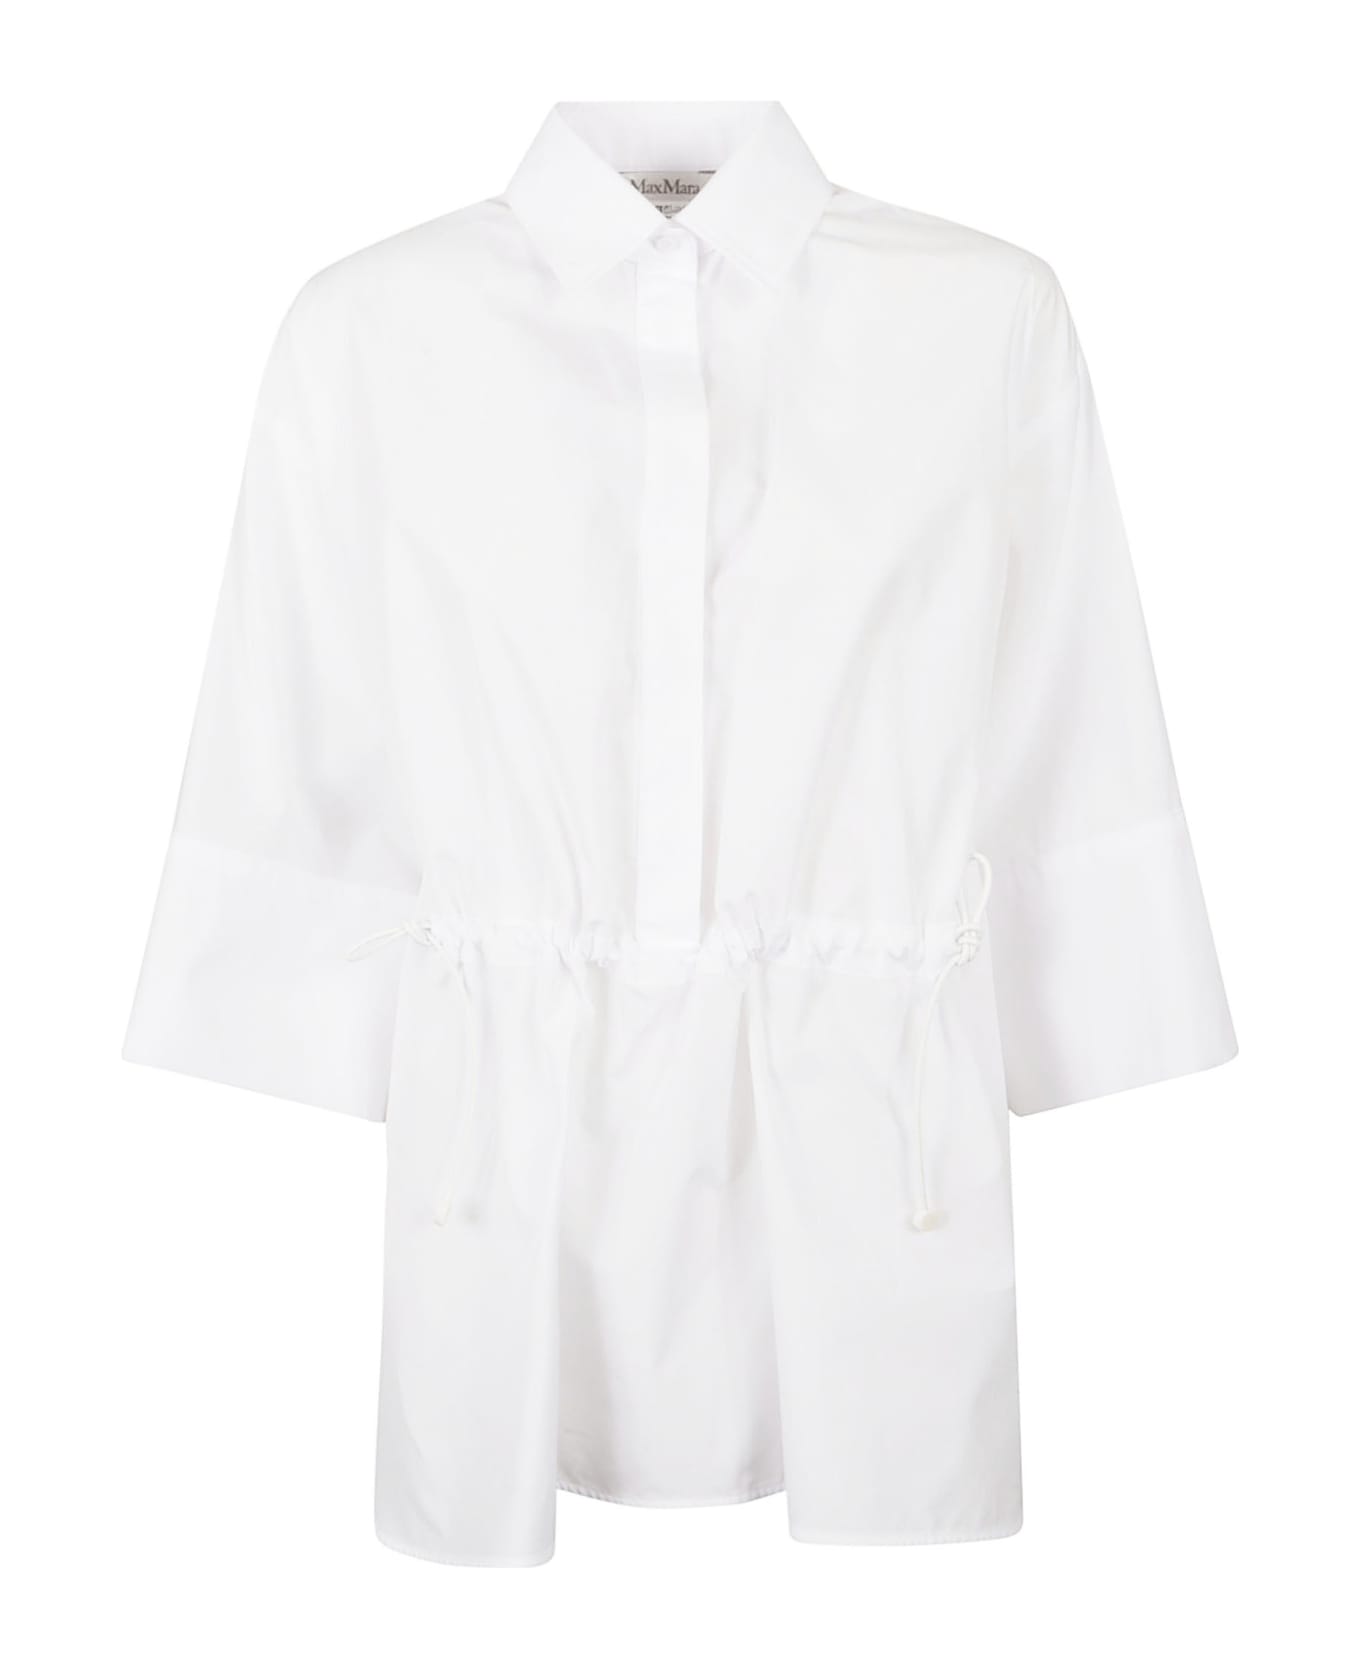 Max Mara Optic White March Shirt - White